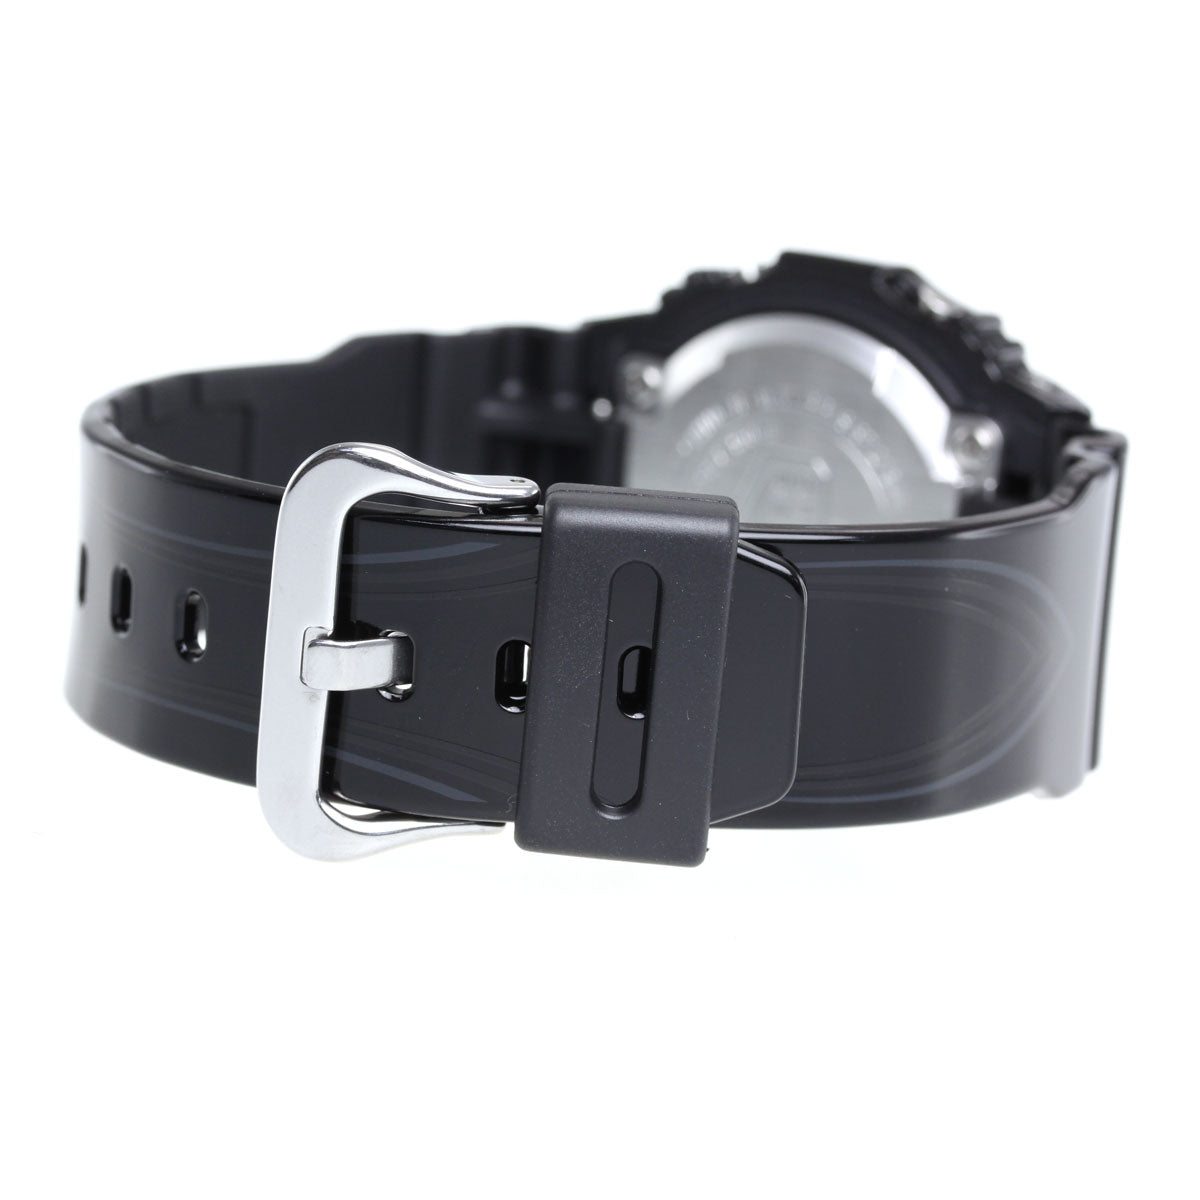 G-SHOCK カシオ Gショック 腕時計 G-LIDE GLX-5600-1JF CASIO G-SHOCK【正規品】